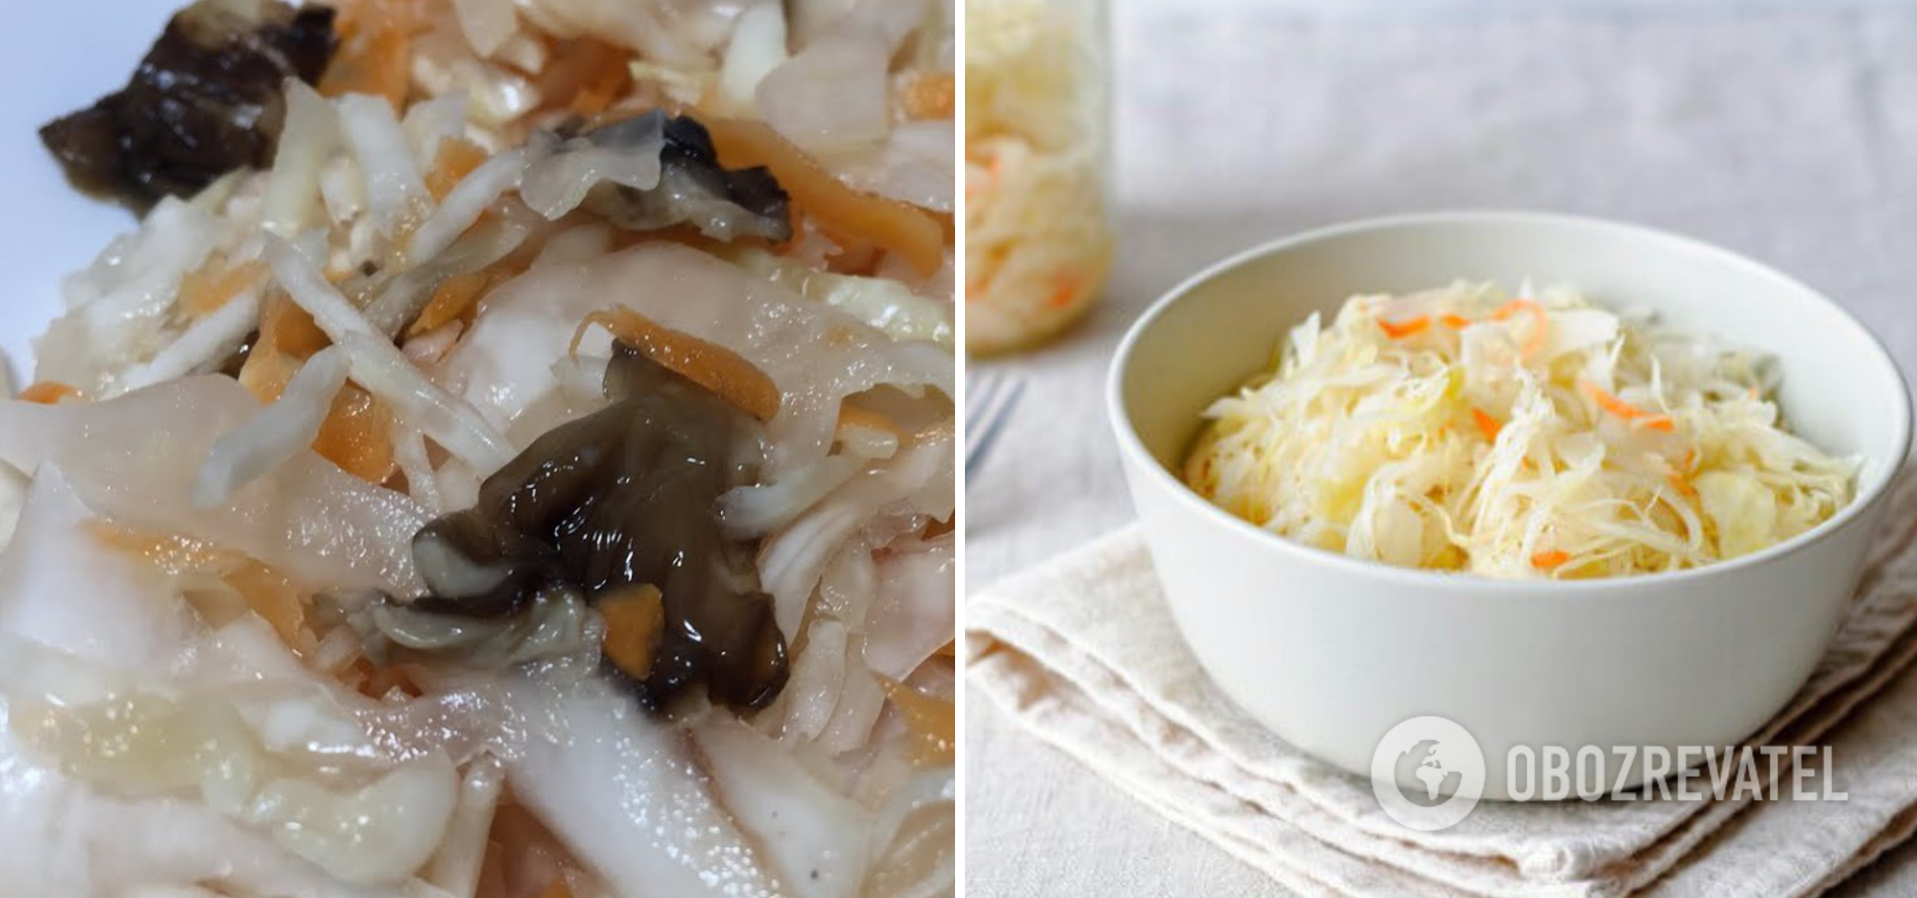 How to make sauerkraut with mushrooms